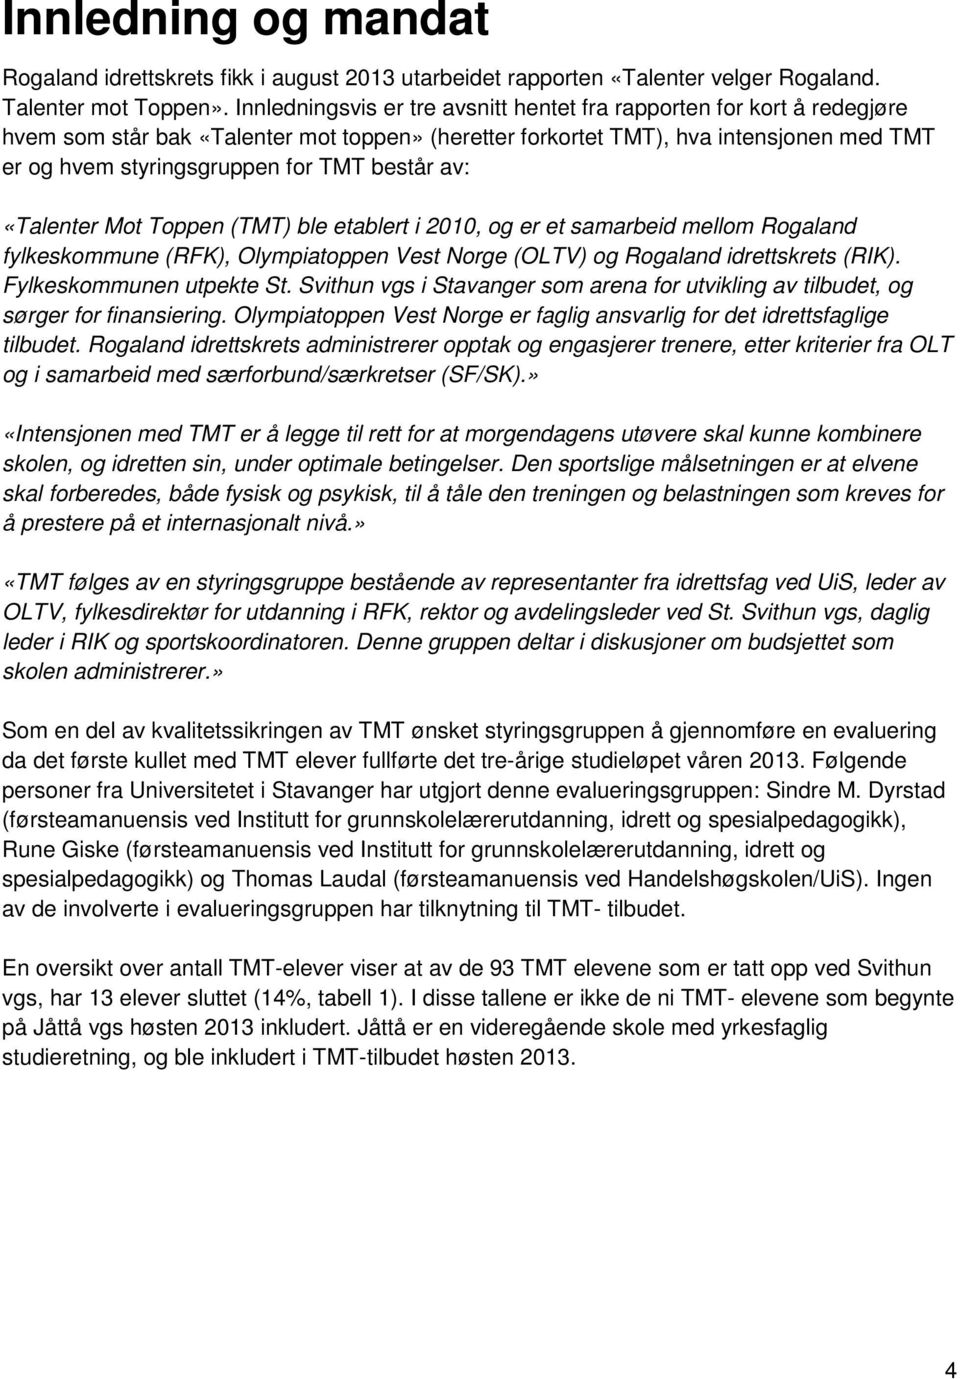 består av: «Talenter Mot Toppen (TMT) ble etablert i 2010, og er et samarbeid mellom Rogaland fylkeskommune (RFK), Olympiatoppen Vest Norge (OLTV) og Rogaland idrettskrets (RIK).